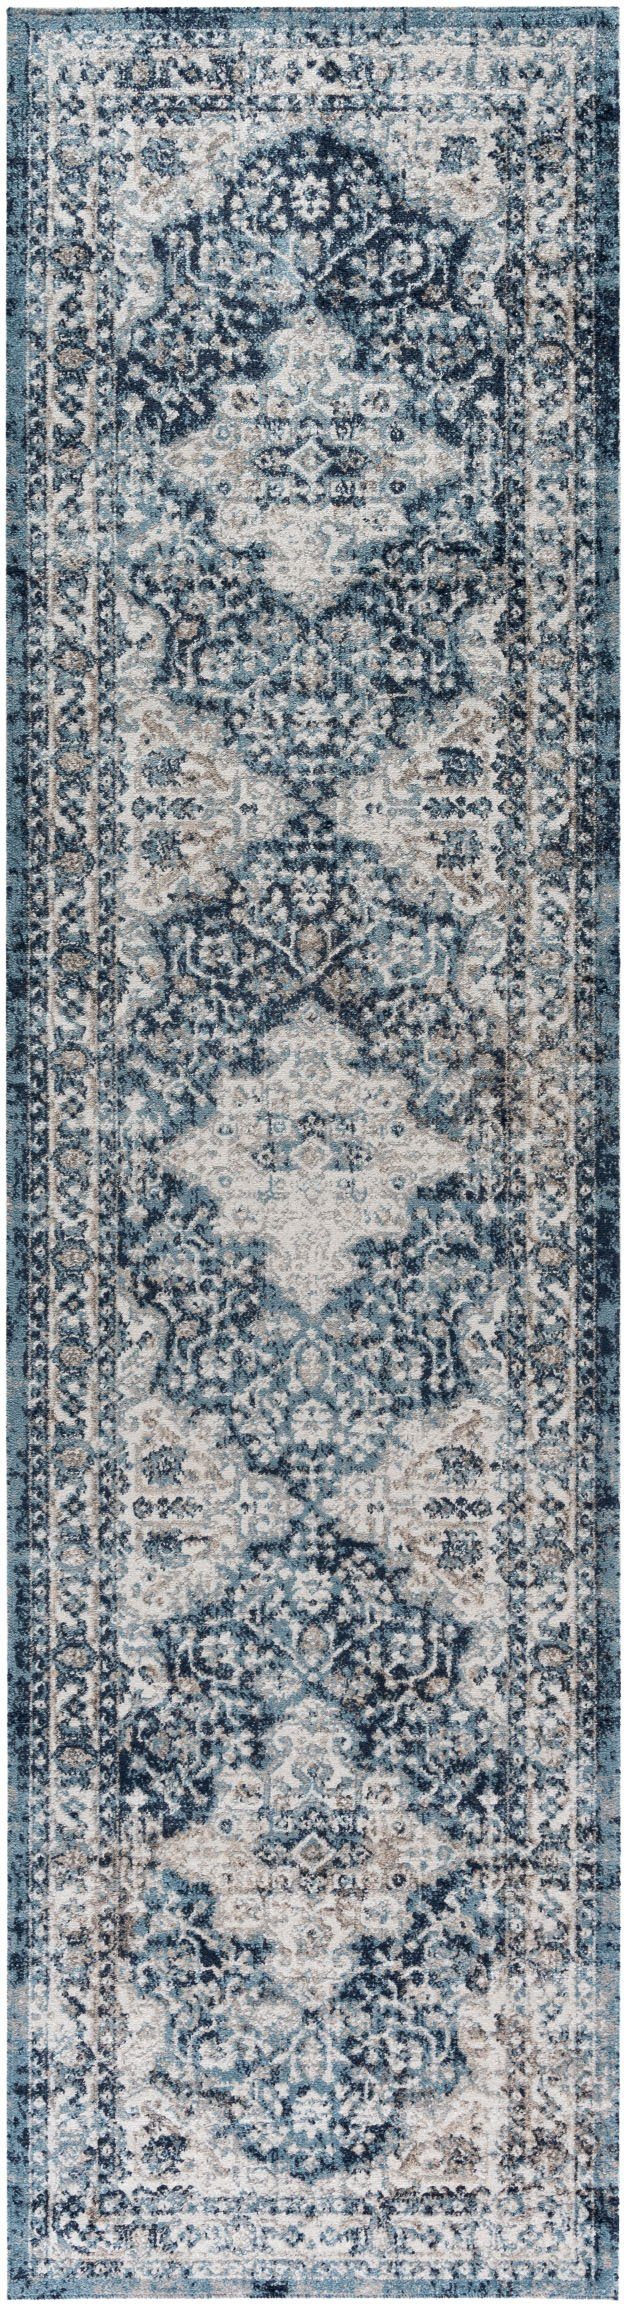 SEHRAZAT Vloerkleed, Antik tapijt, Antares Oosters Tapijt Grijs Blauw, 120X170